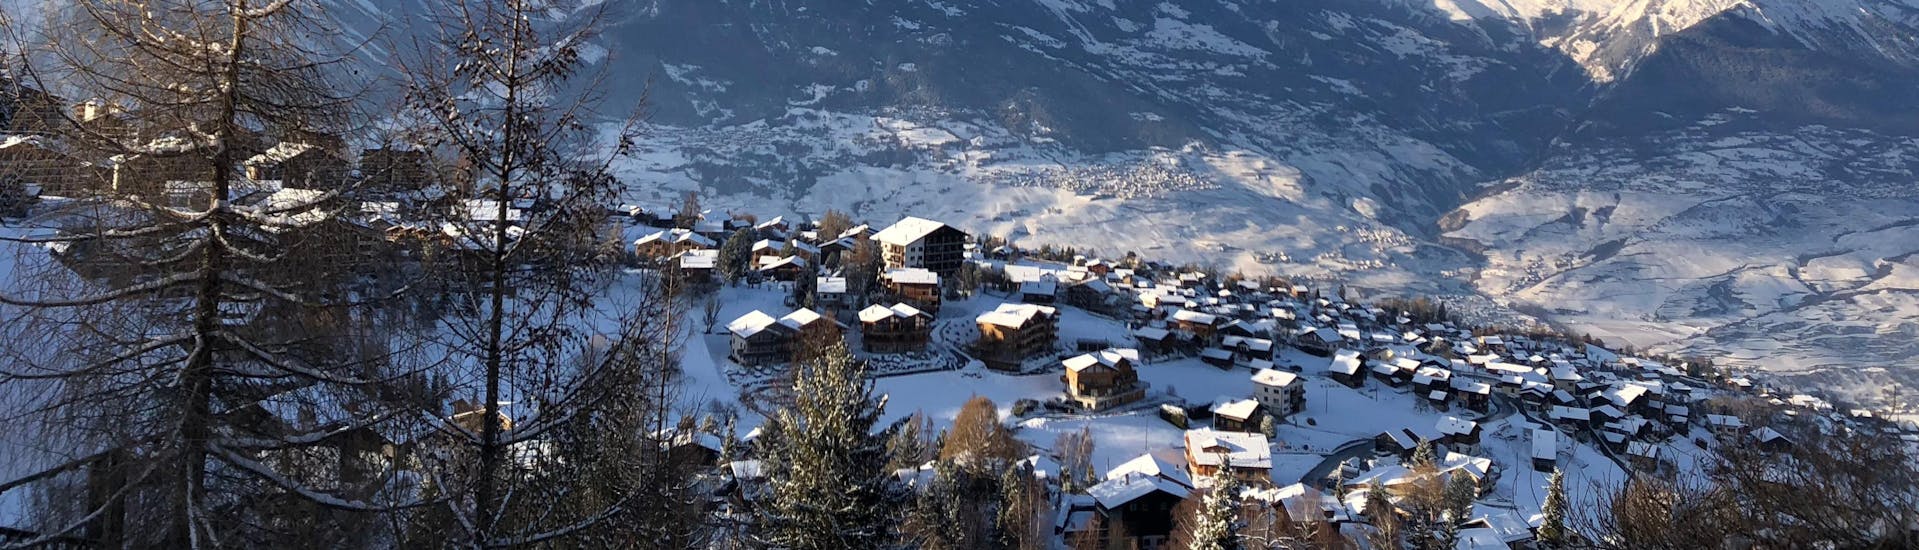 Ein Blick auf das Skigebiet Nendaz, einer beliebten Destination in der französischen Schweiz, wo Besucher bei einer der örtlichen Skischulen einen Skikurs buchen können.